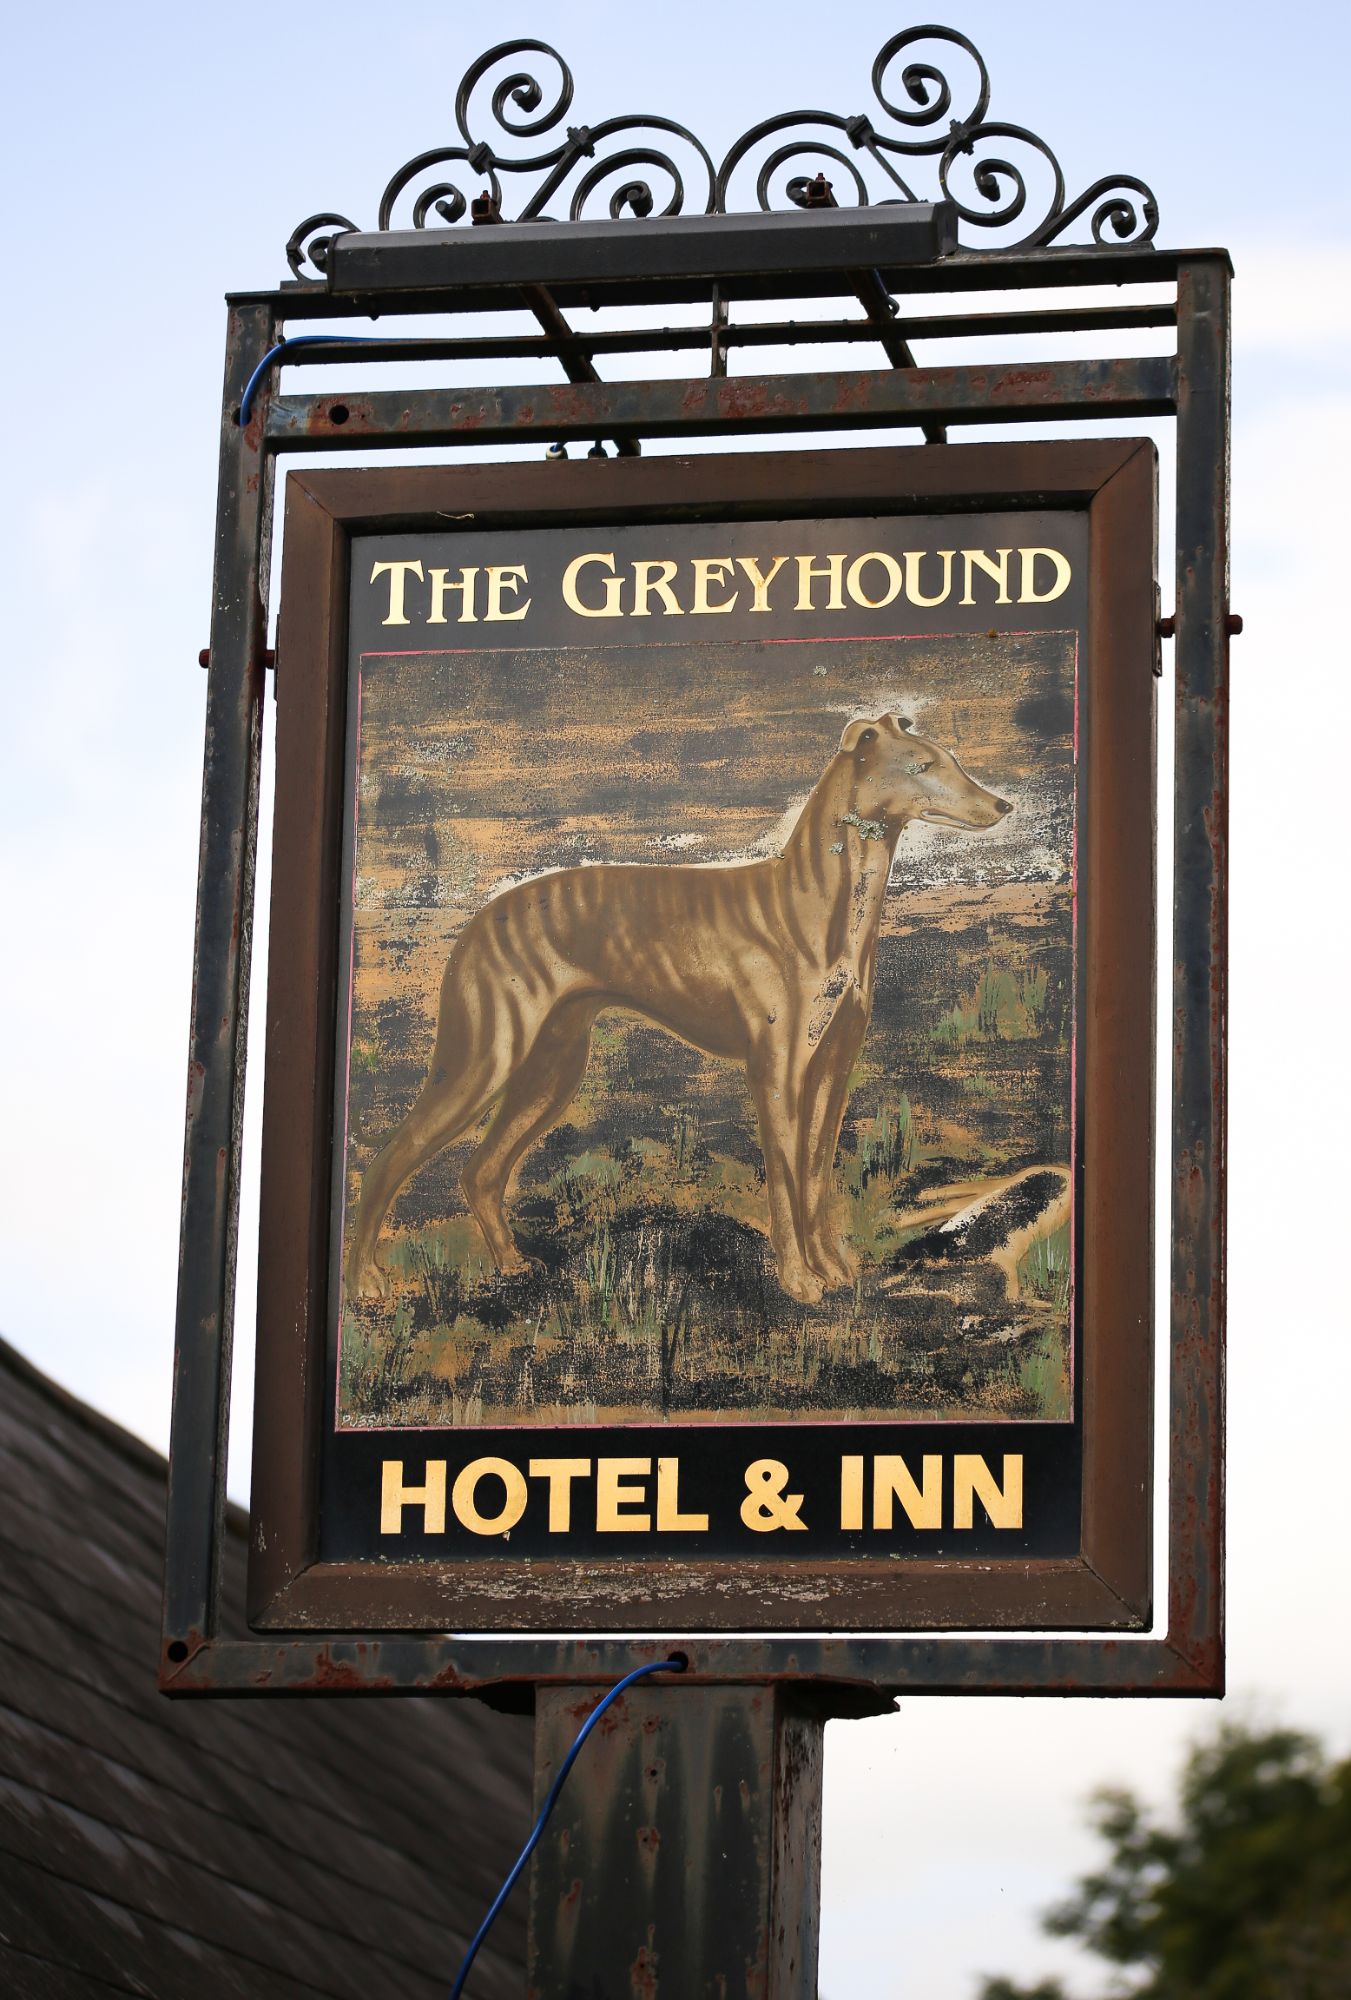 The Greyhound Inn sign